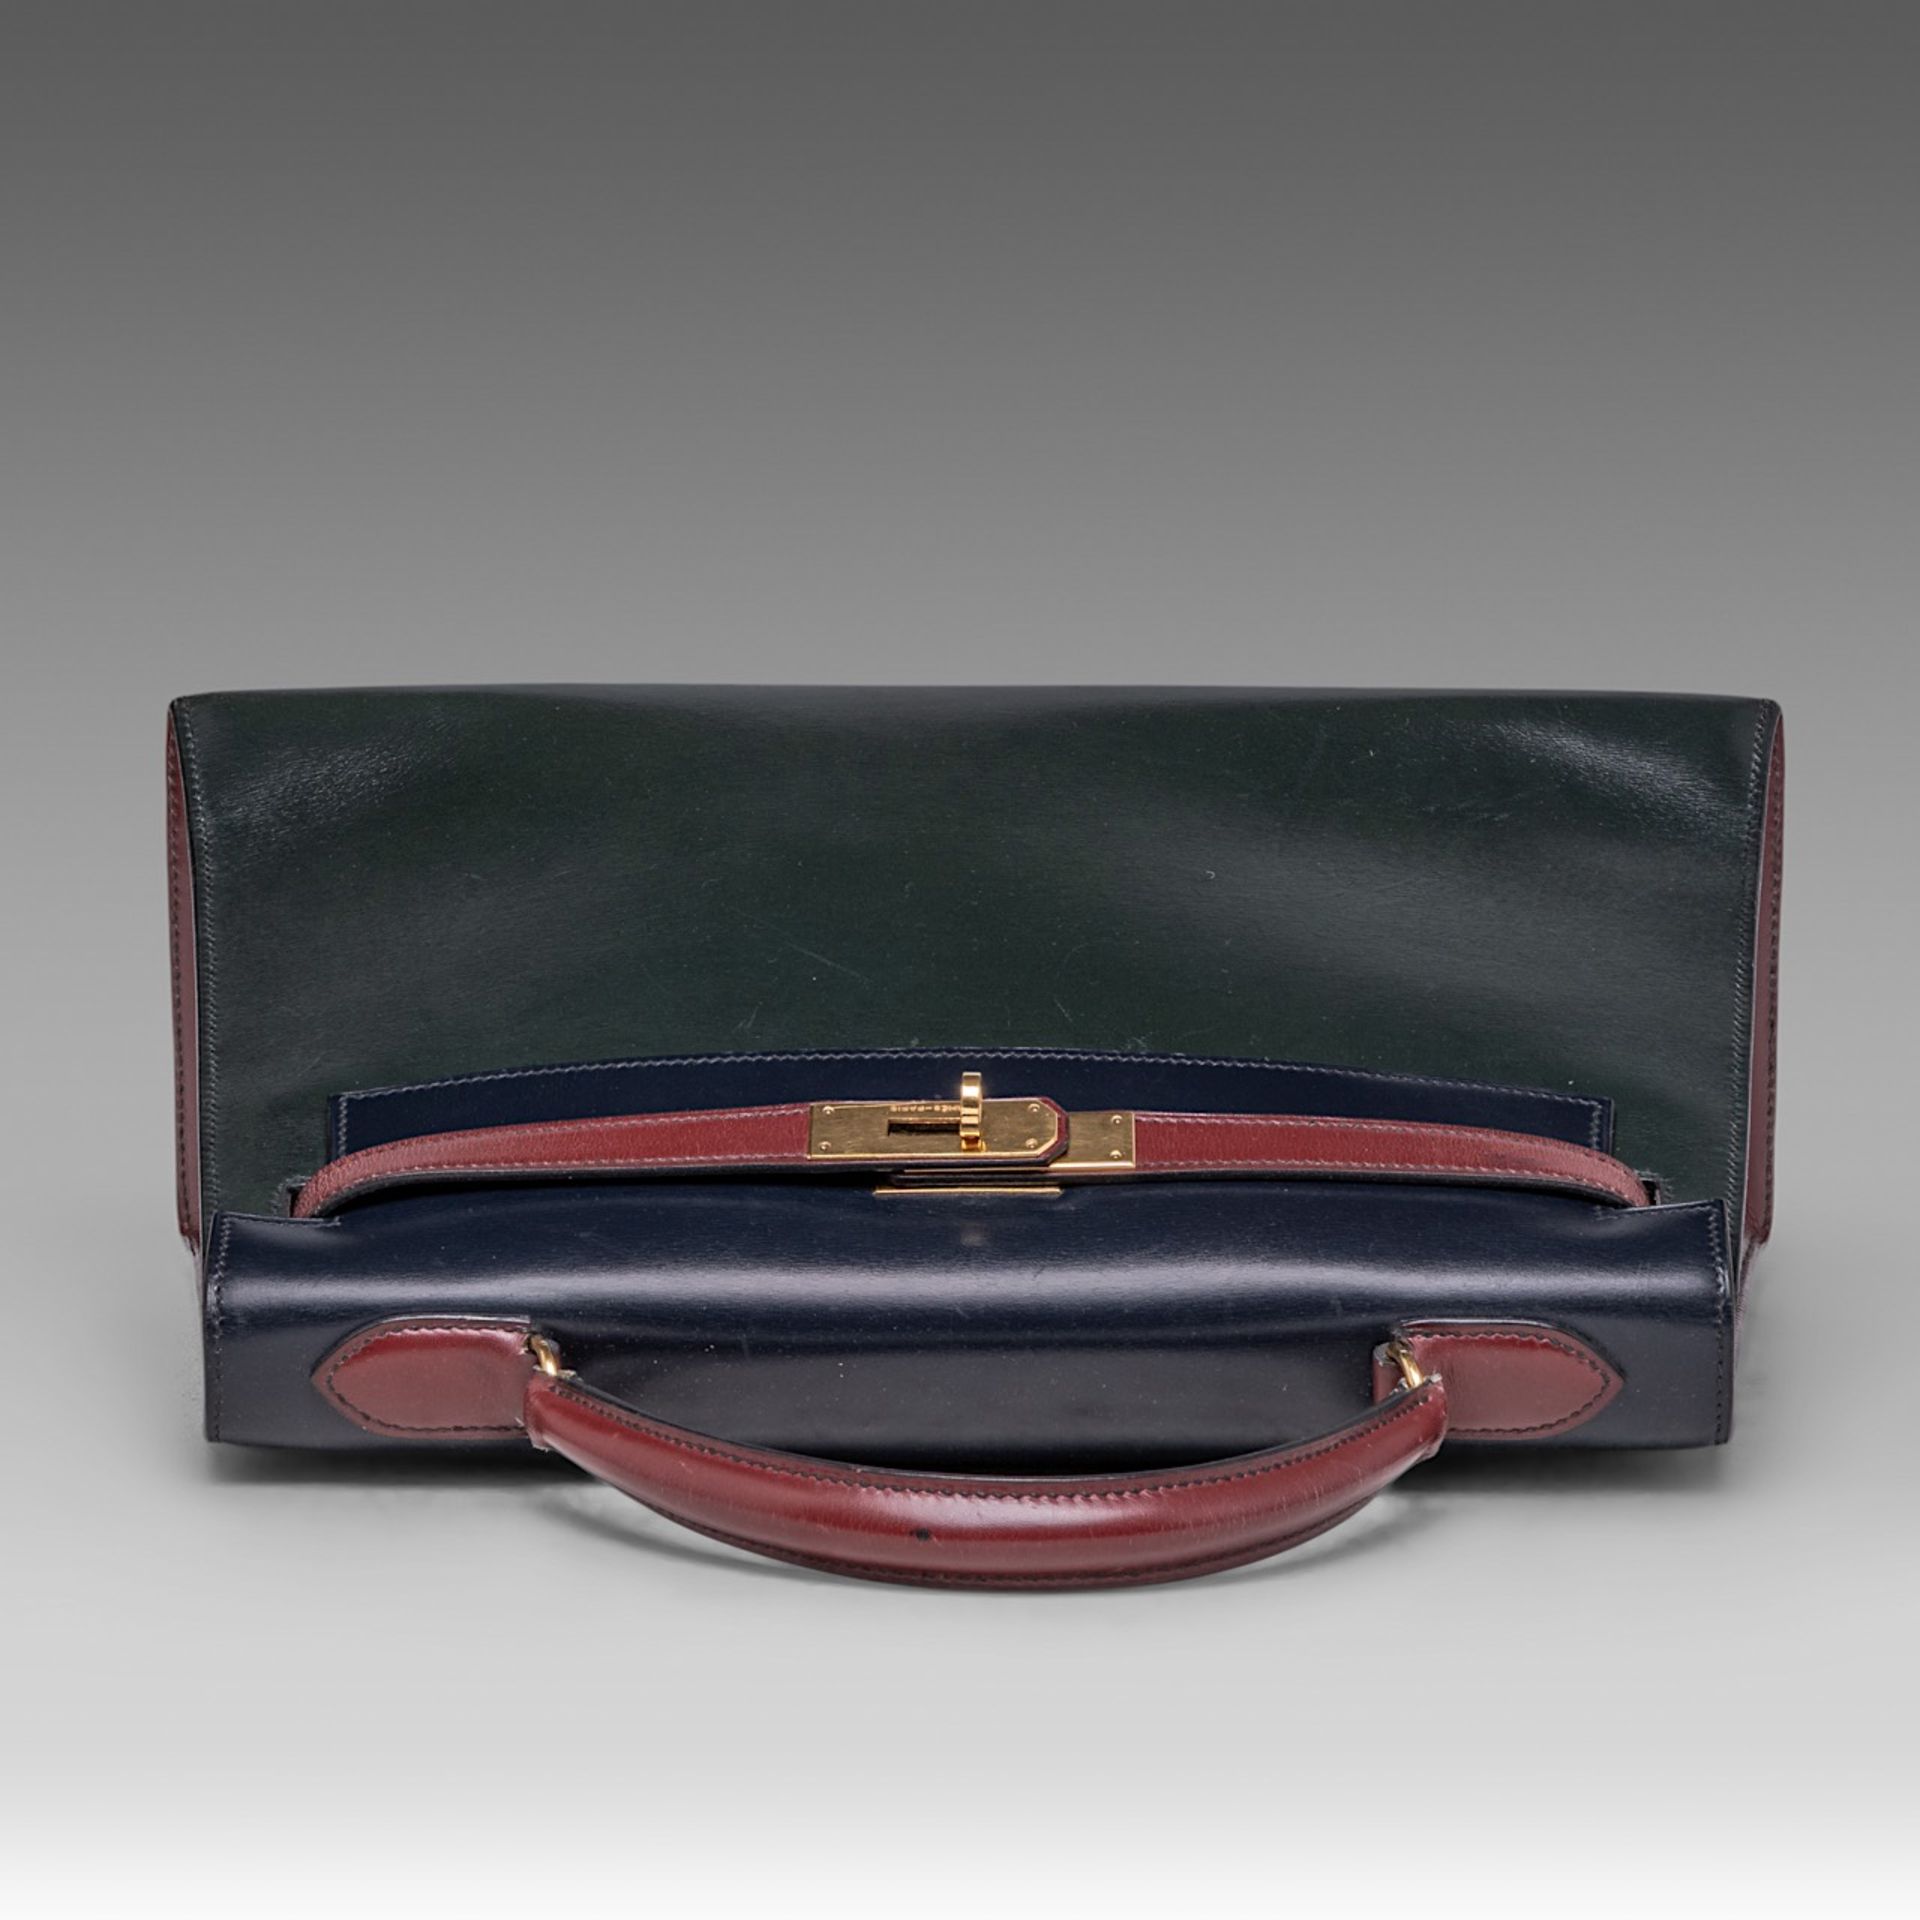 A vintage Hermes 'Kelly' 32 handbag, in rouge vif/vert fonce/bleu indigo box calfskin, with gilt met - Image 6 of 7